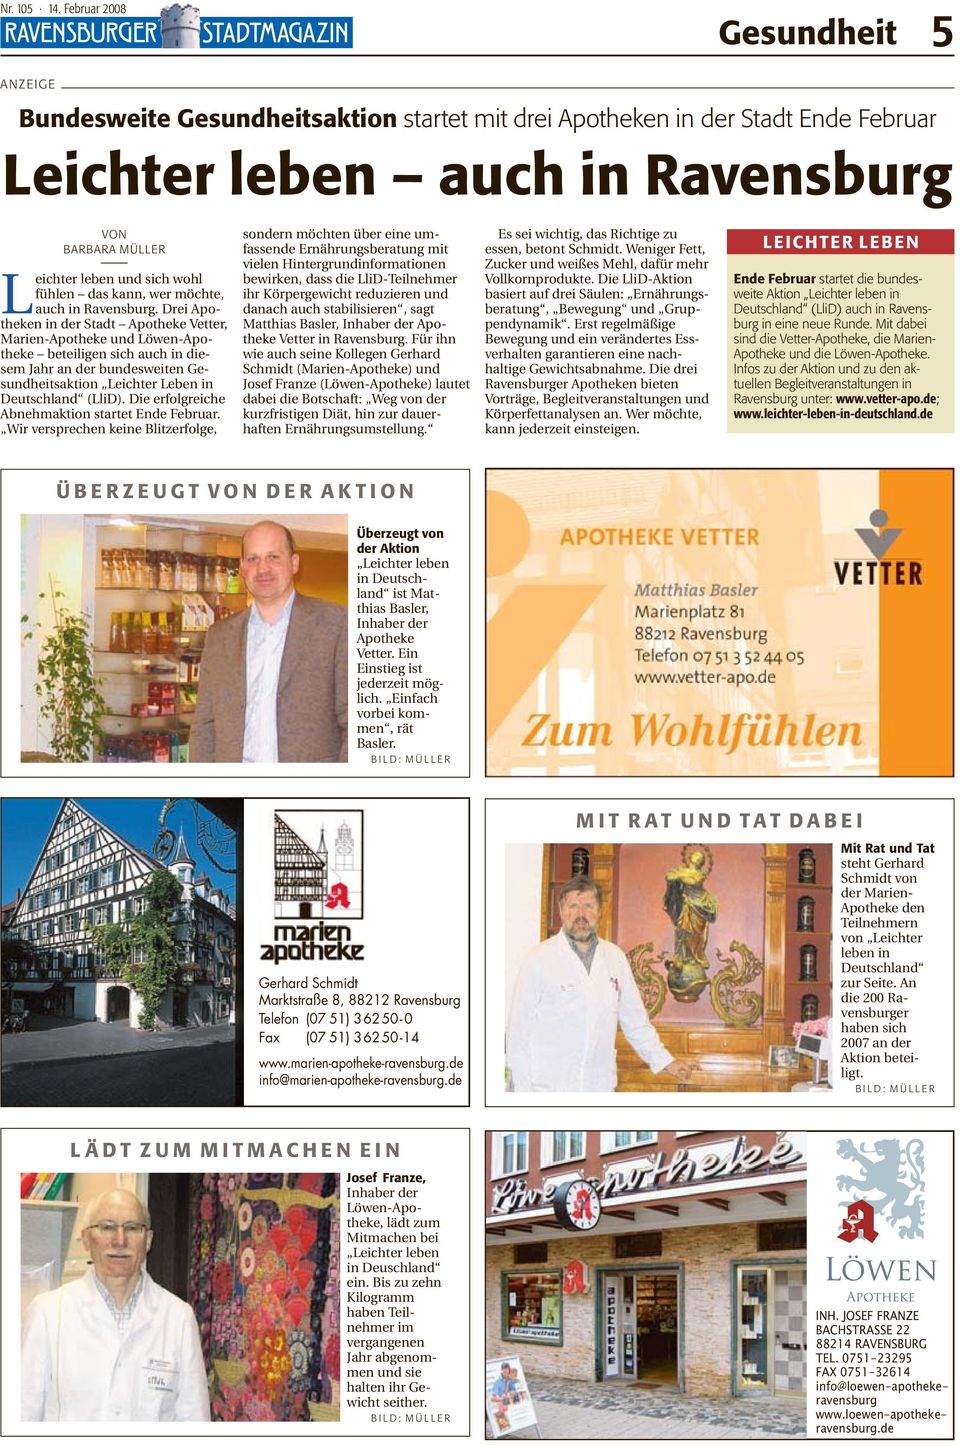 Drei Apotheken in der Stadt Apotheke Vetter, Marien-Apotheke und Löwen-Apotheke beteiligen sich auch in diesem Jahr an der bundesweiten Gesundheitsaktion Leichter Leben in Deutschland (LliD).